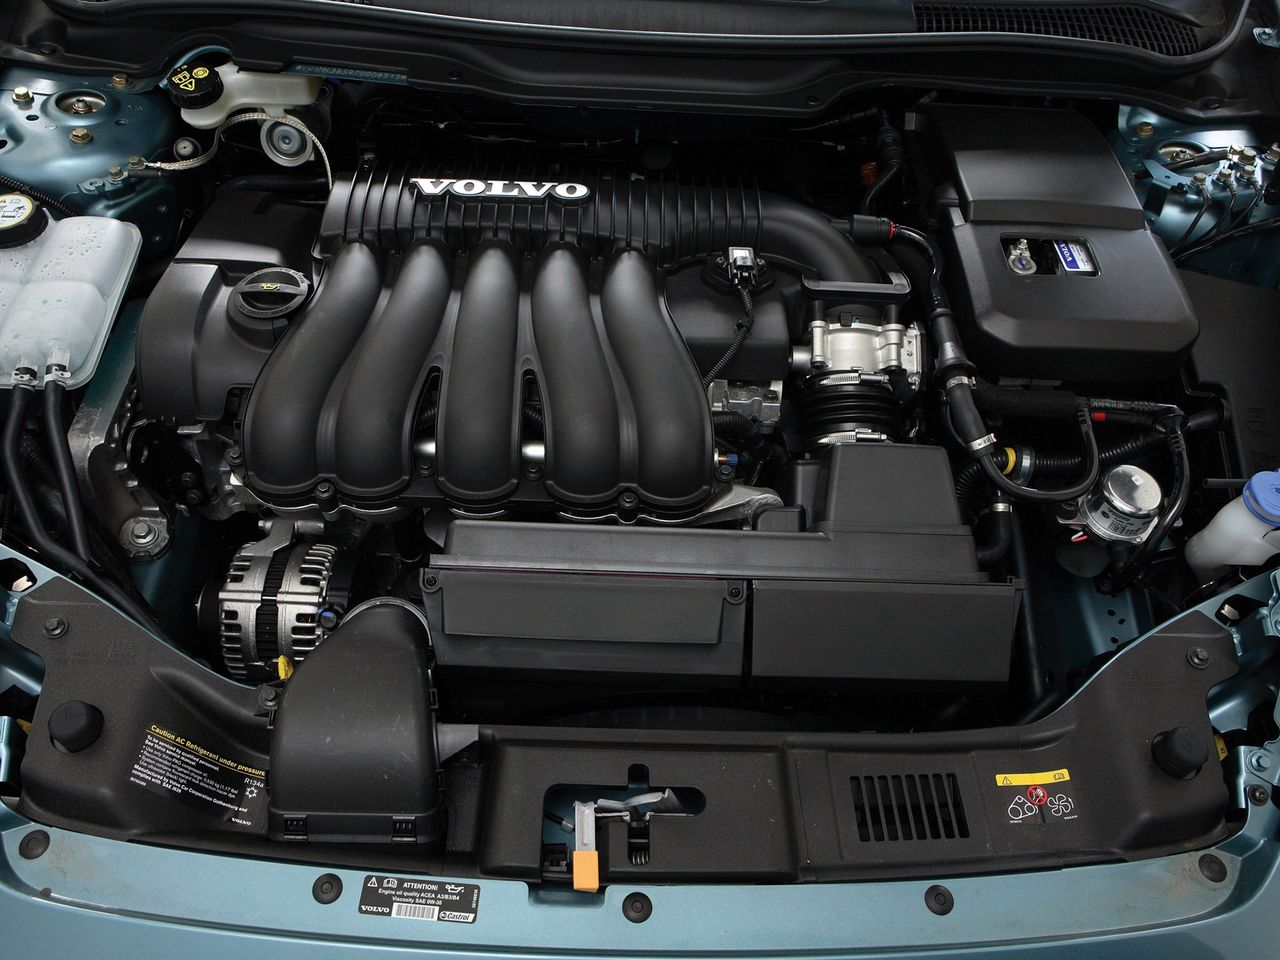 5-cylindrowy silnik 2.4 w okresie 2000-2012 trafił do niemal wszystkich modeli Volvo